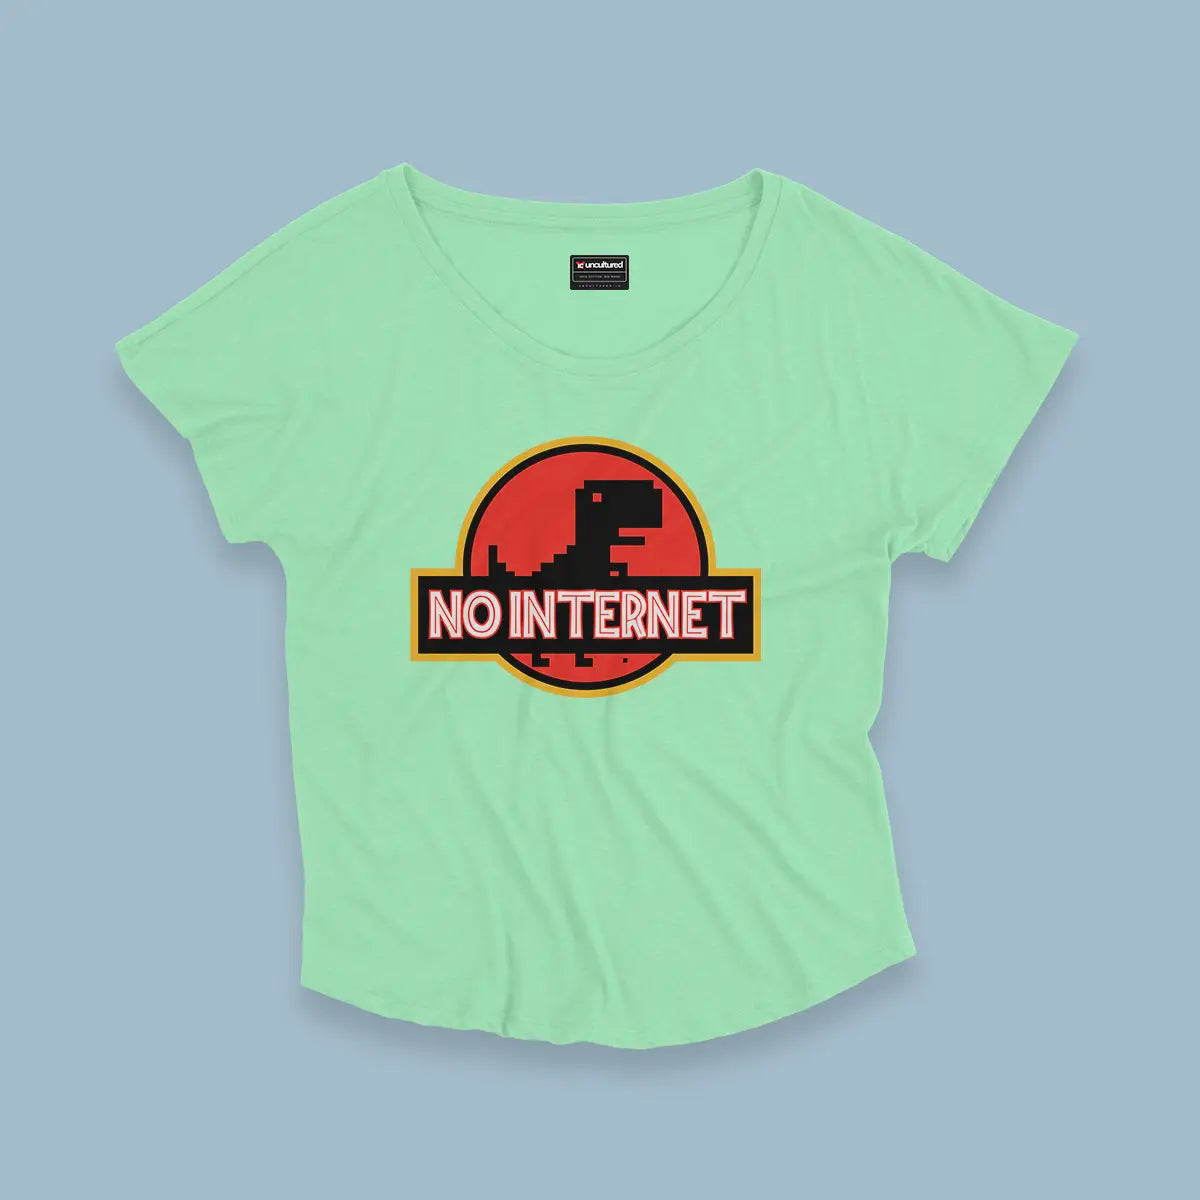 No internet - Croptop